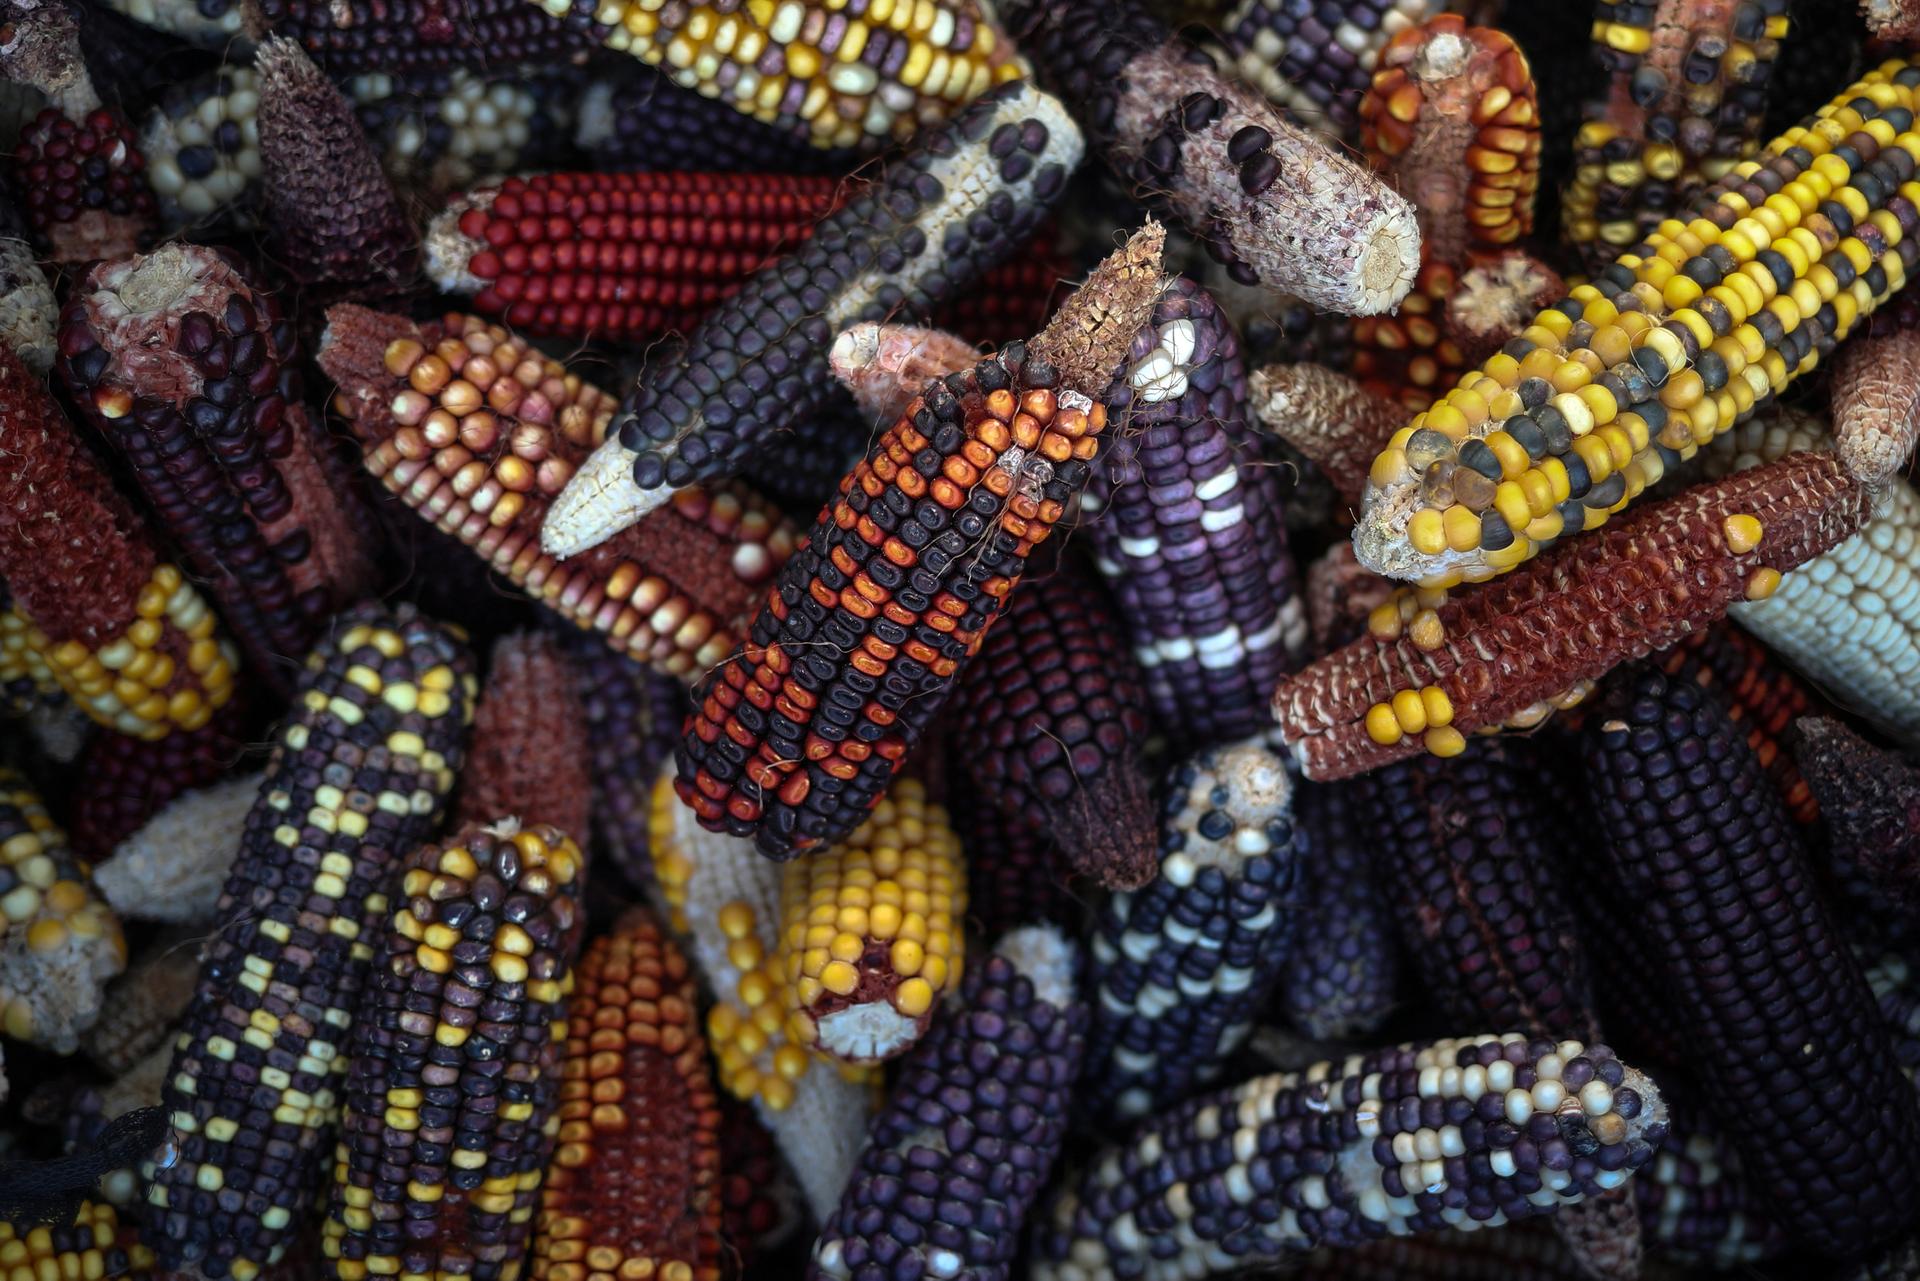 New varieties of corn